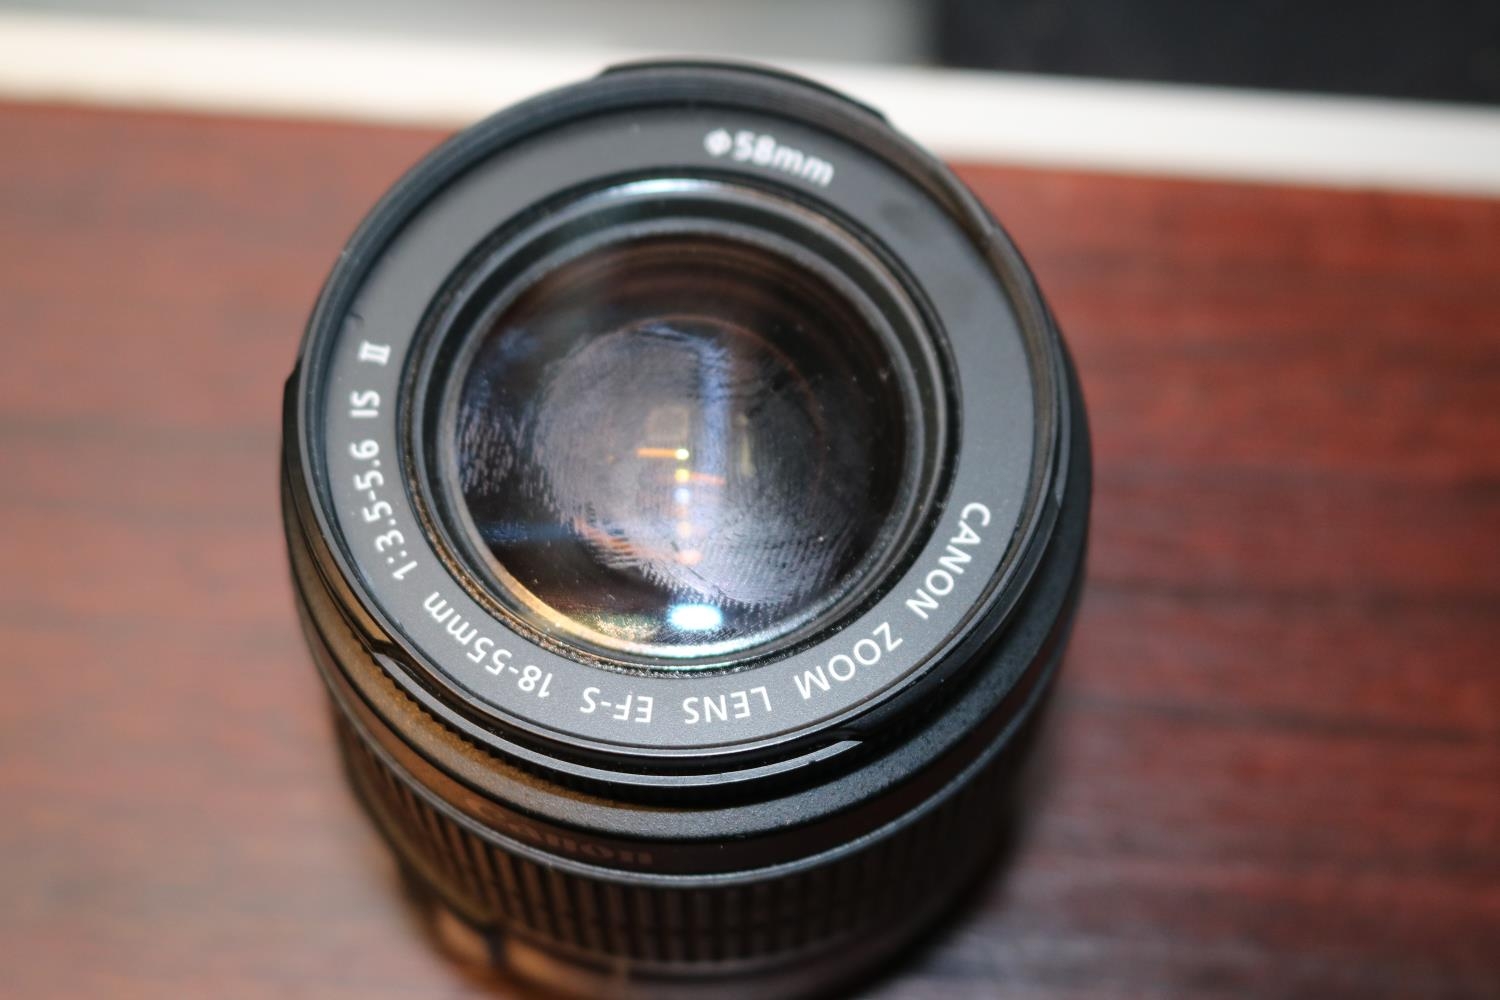 Canon Zoom Lens EF-S 18-55mm AF/MF - Image 2 of 3